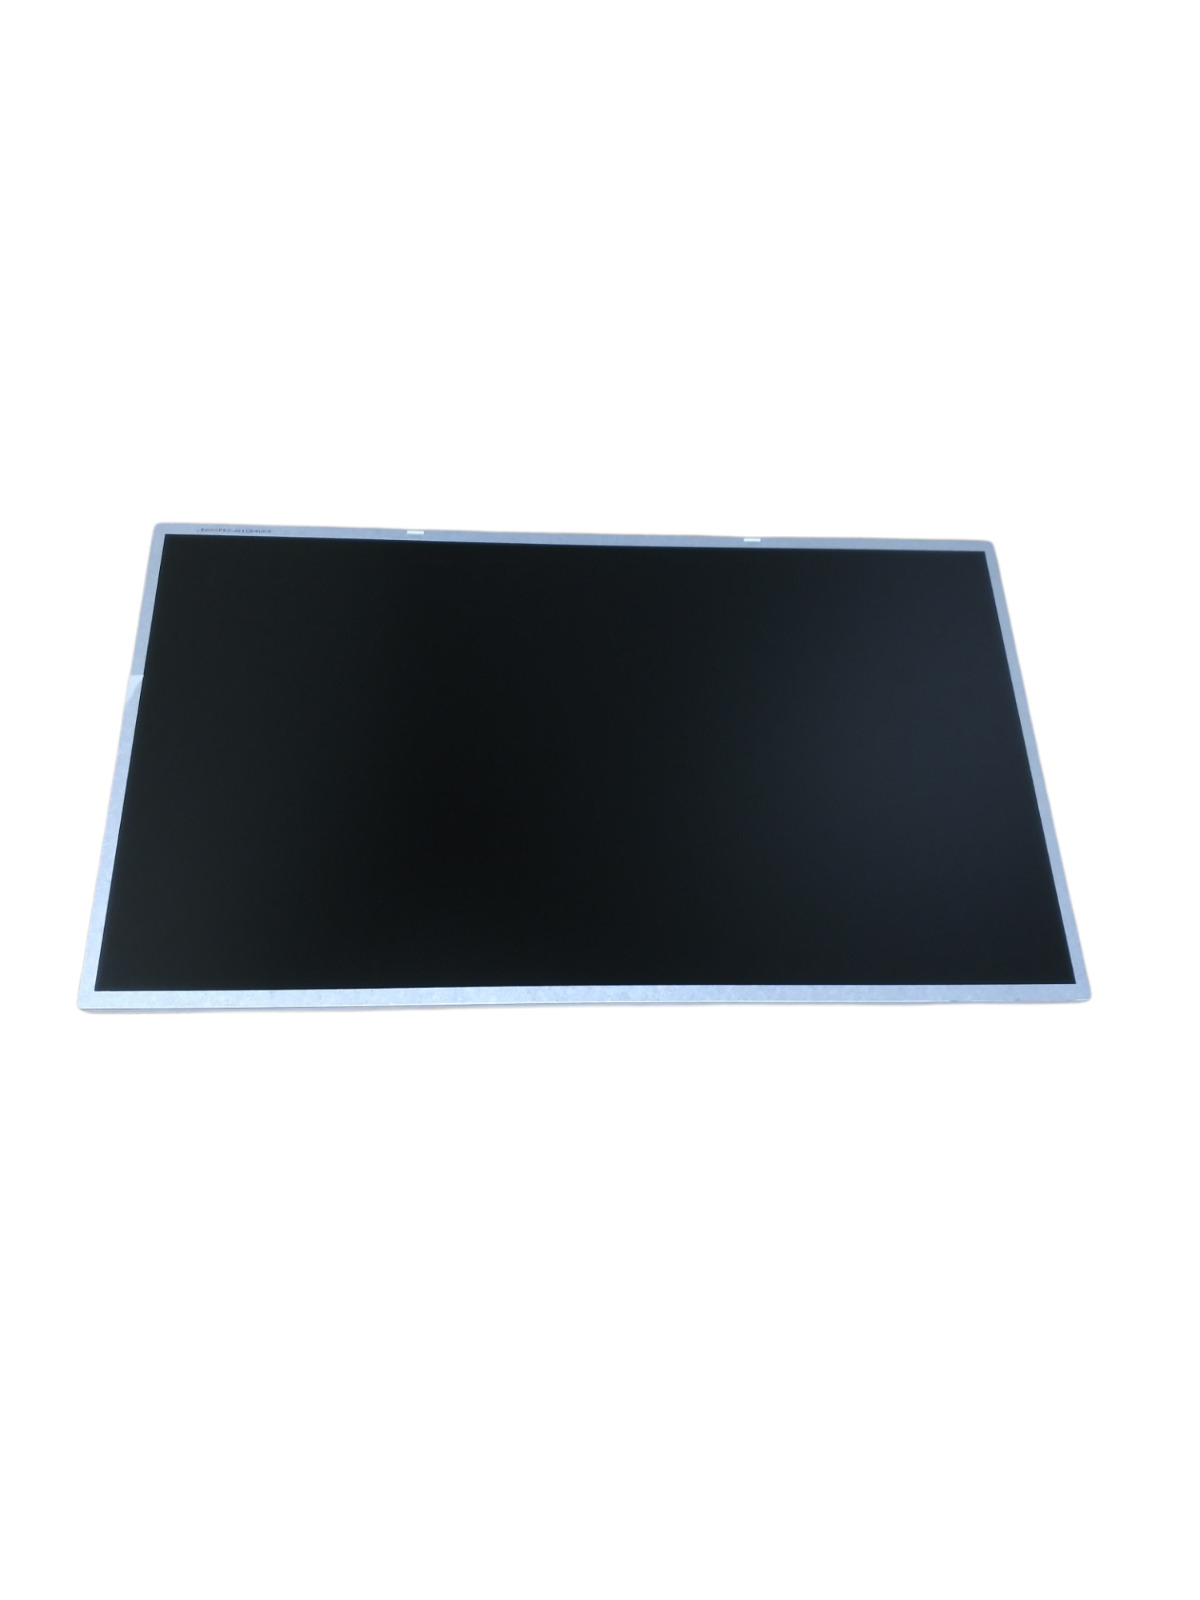 New CMO N173HGE-E11 REV.C1 C2 LCD Screen LED for Laptop 17.3\